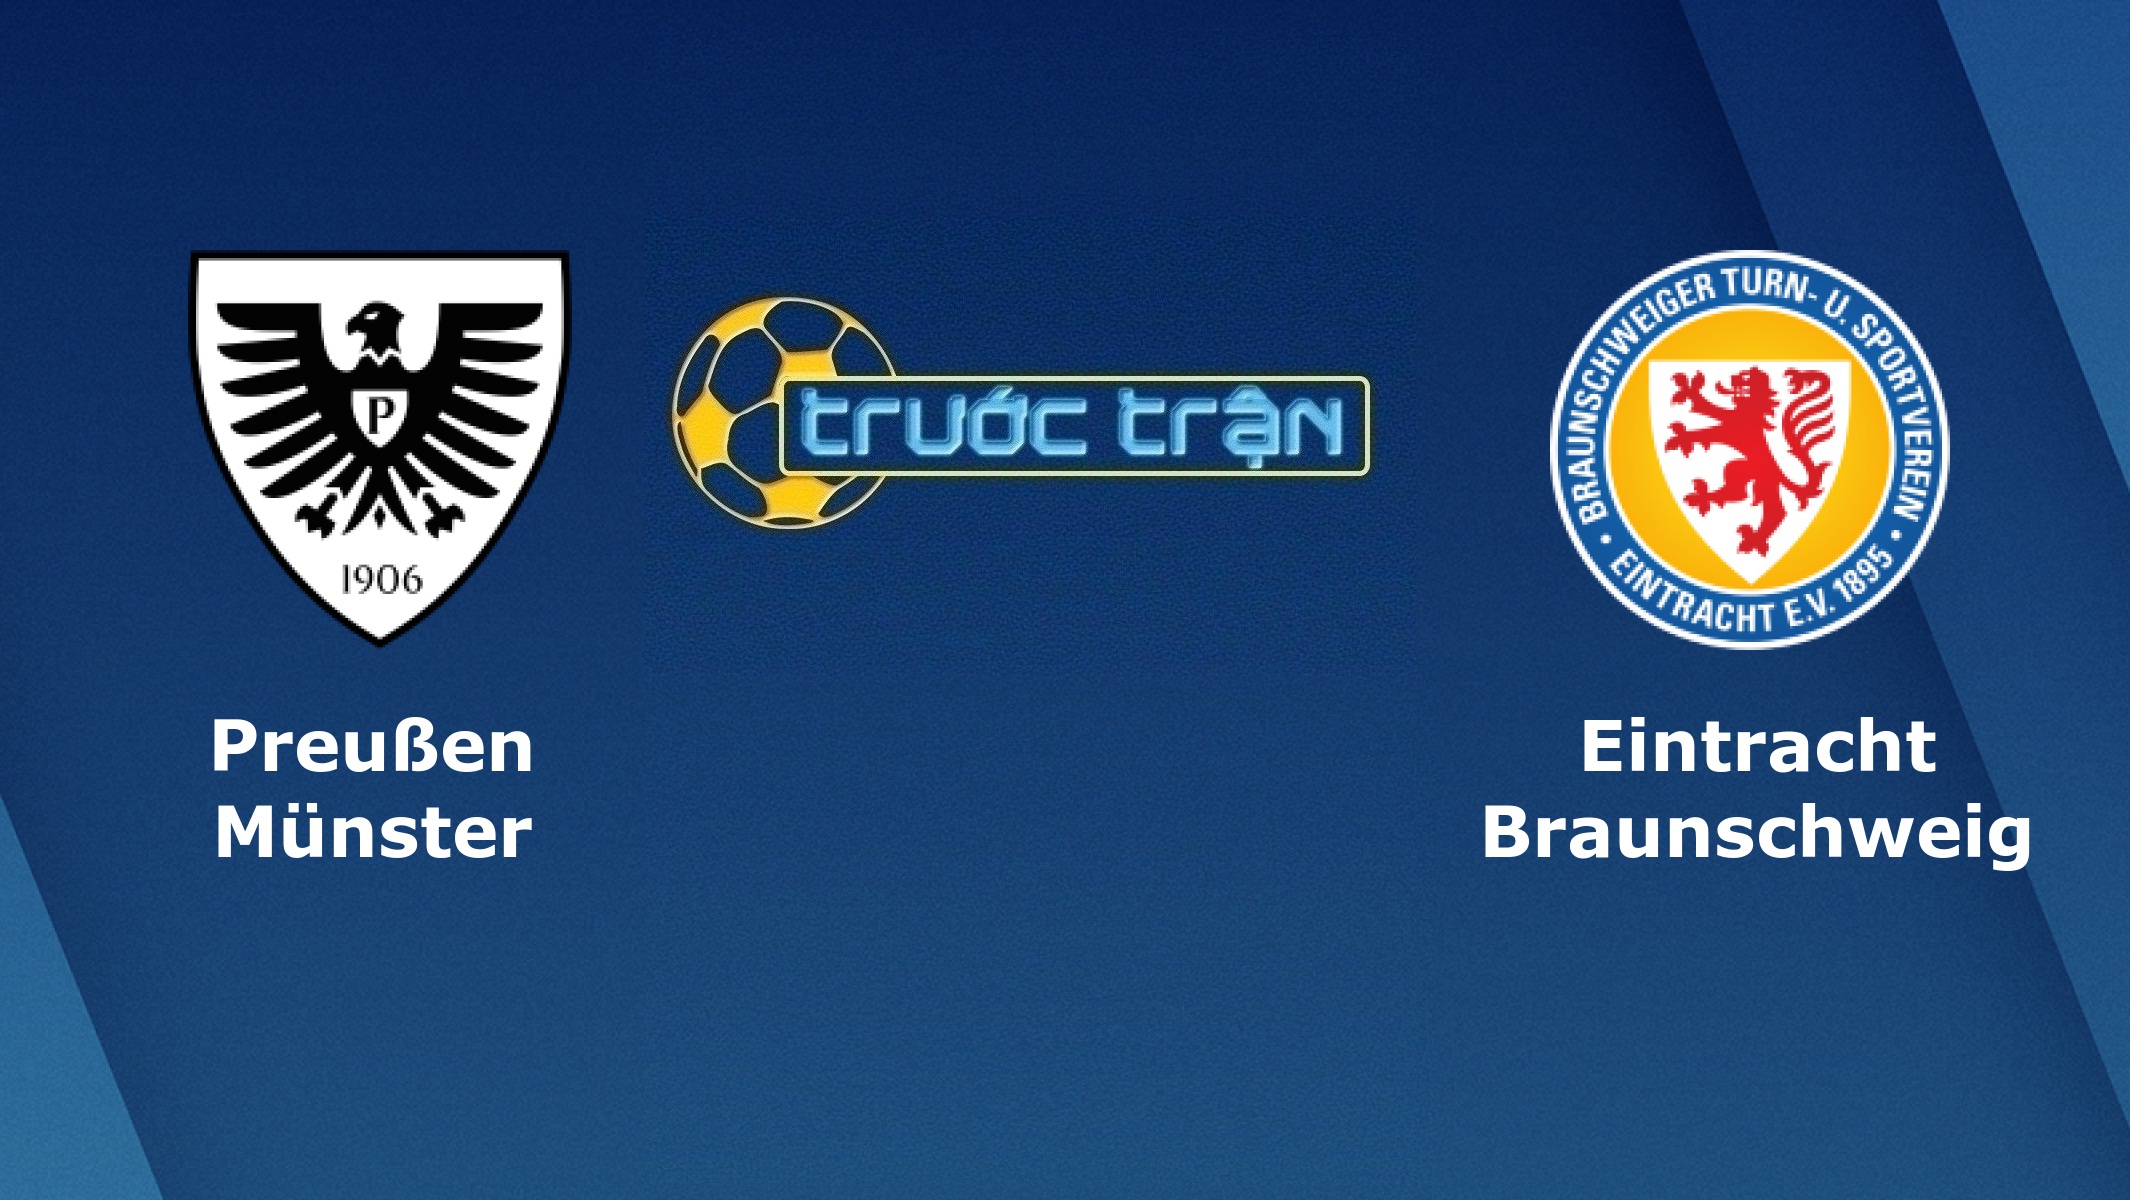 Preuben Munster vs Eintracht Braunschweig – Tip kèo bóng đá hôm nay – 12/11